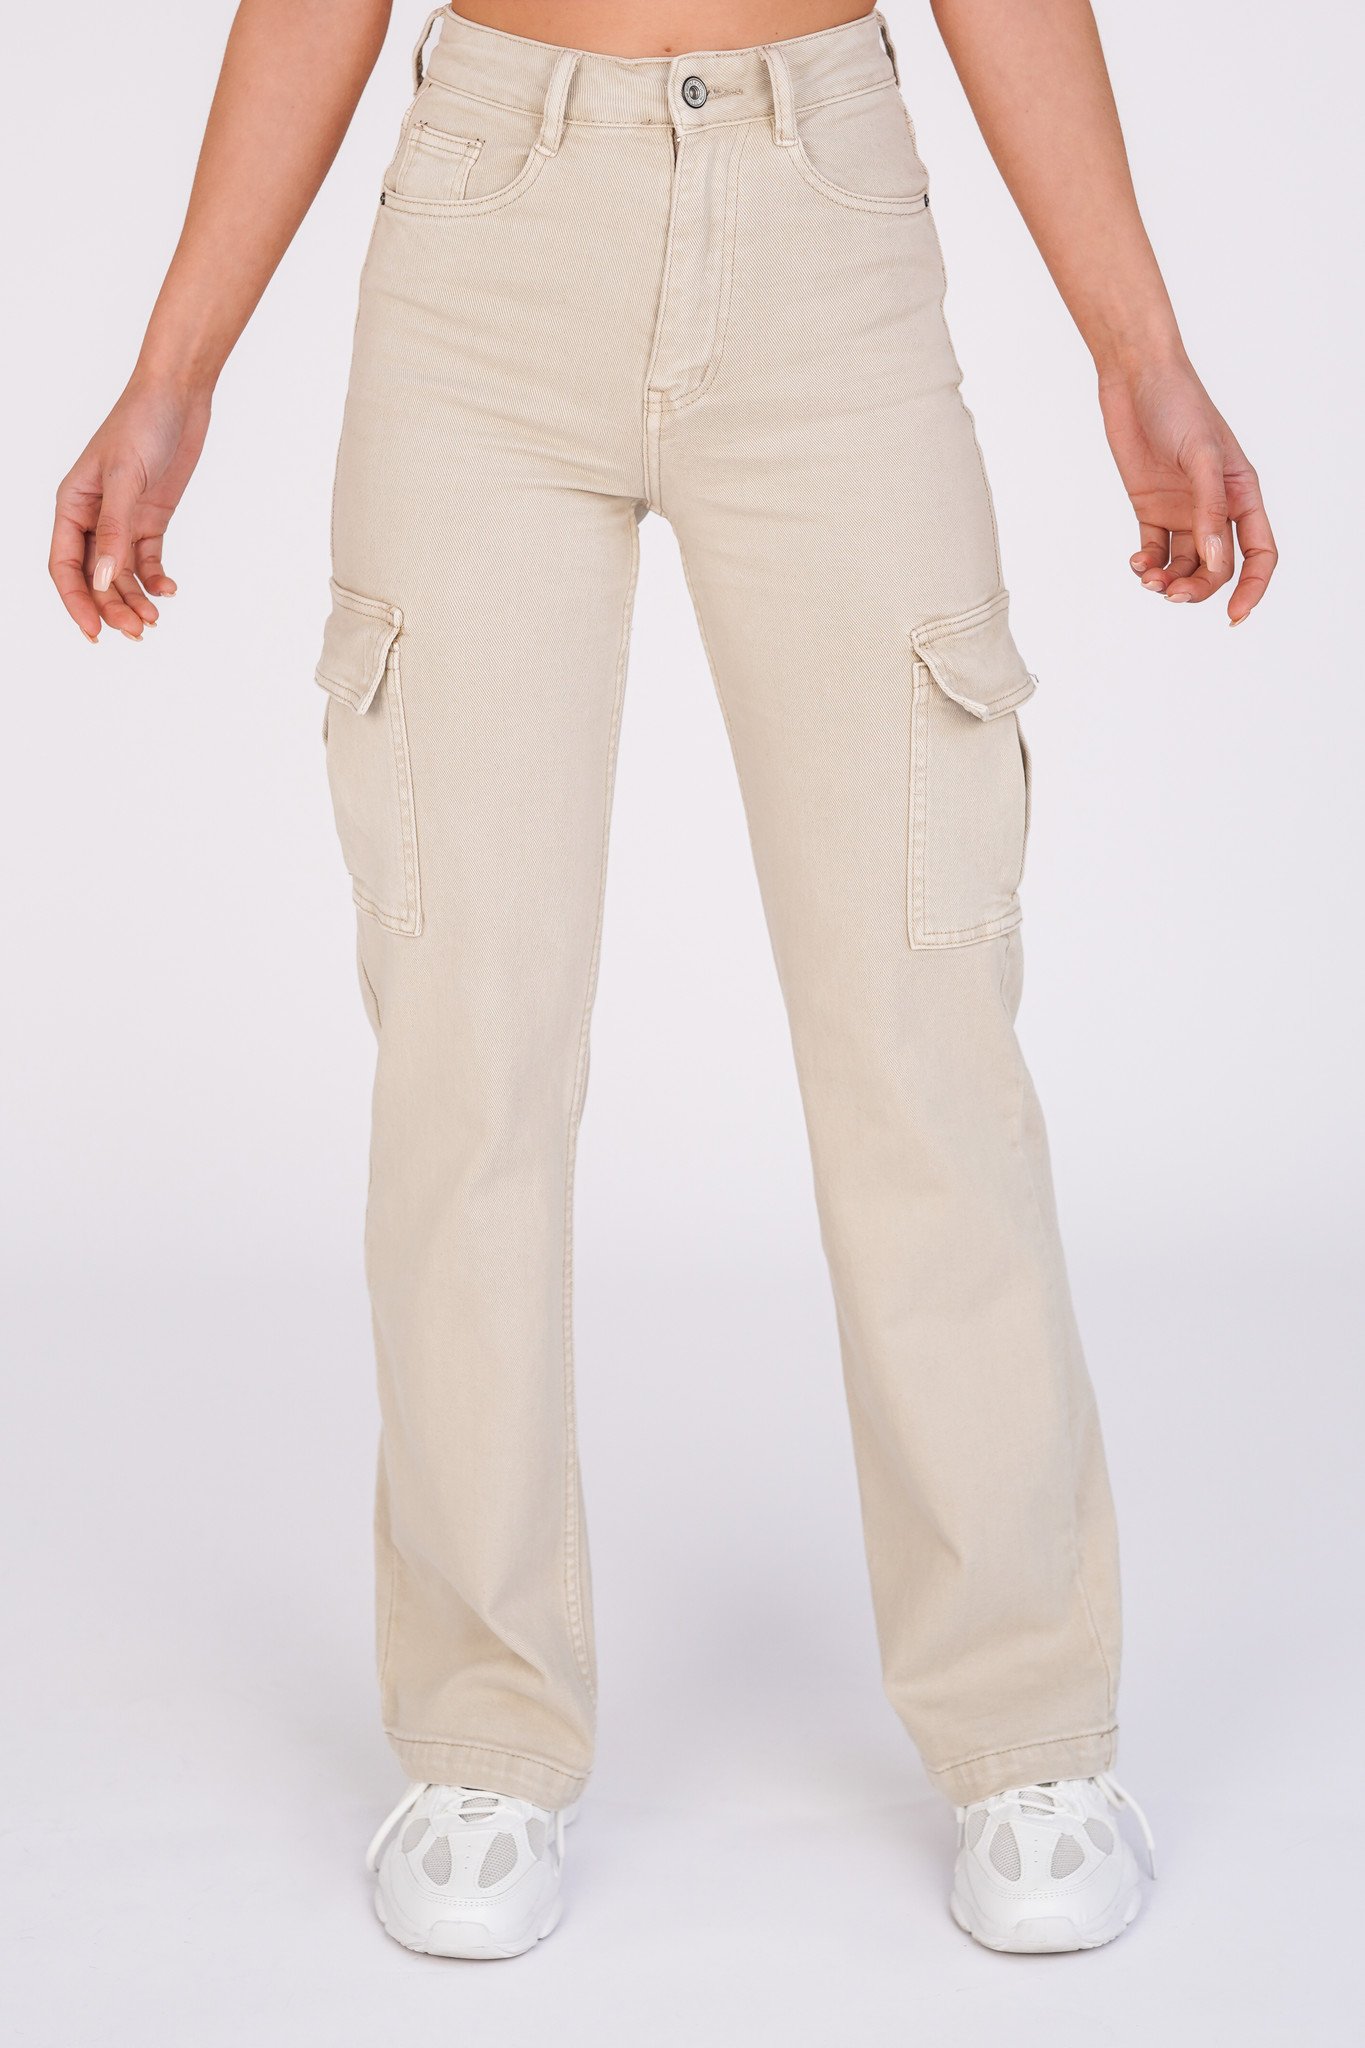 Scherm Schepsel trui Cargo pants beige met stretch en high waist model | Esuals.nl - Esuals